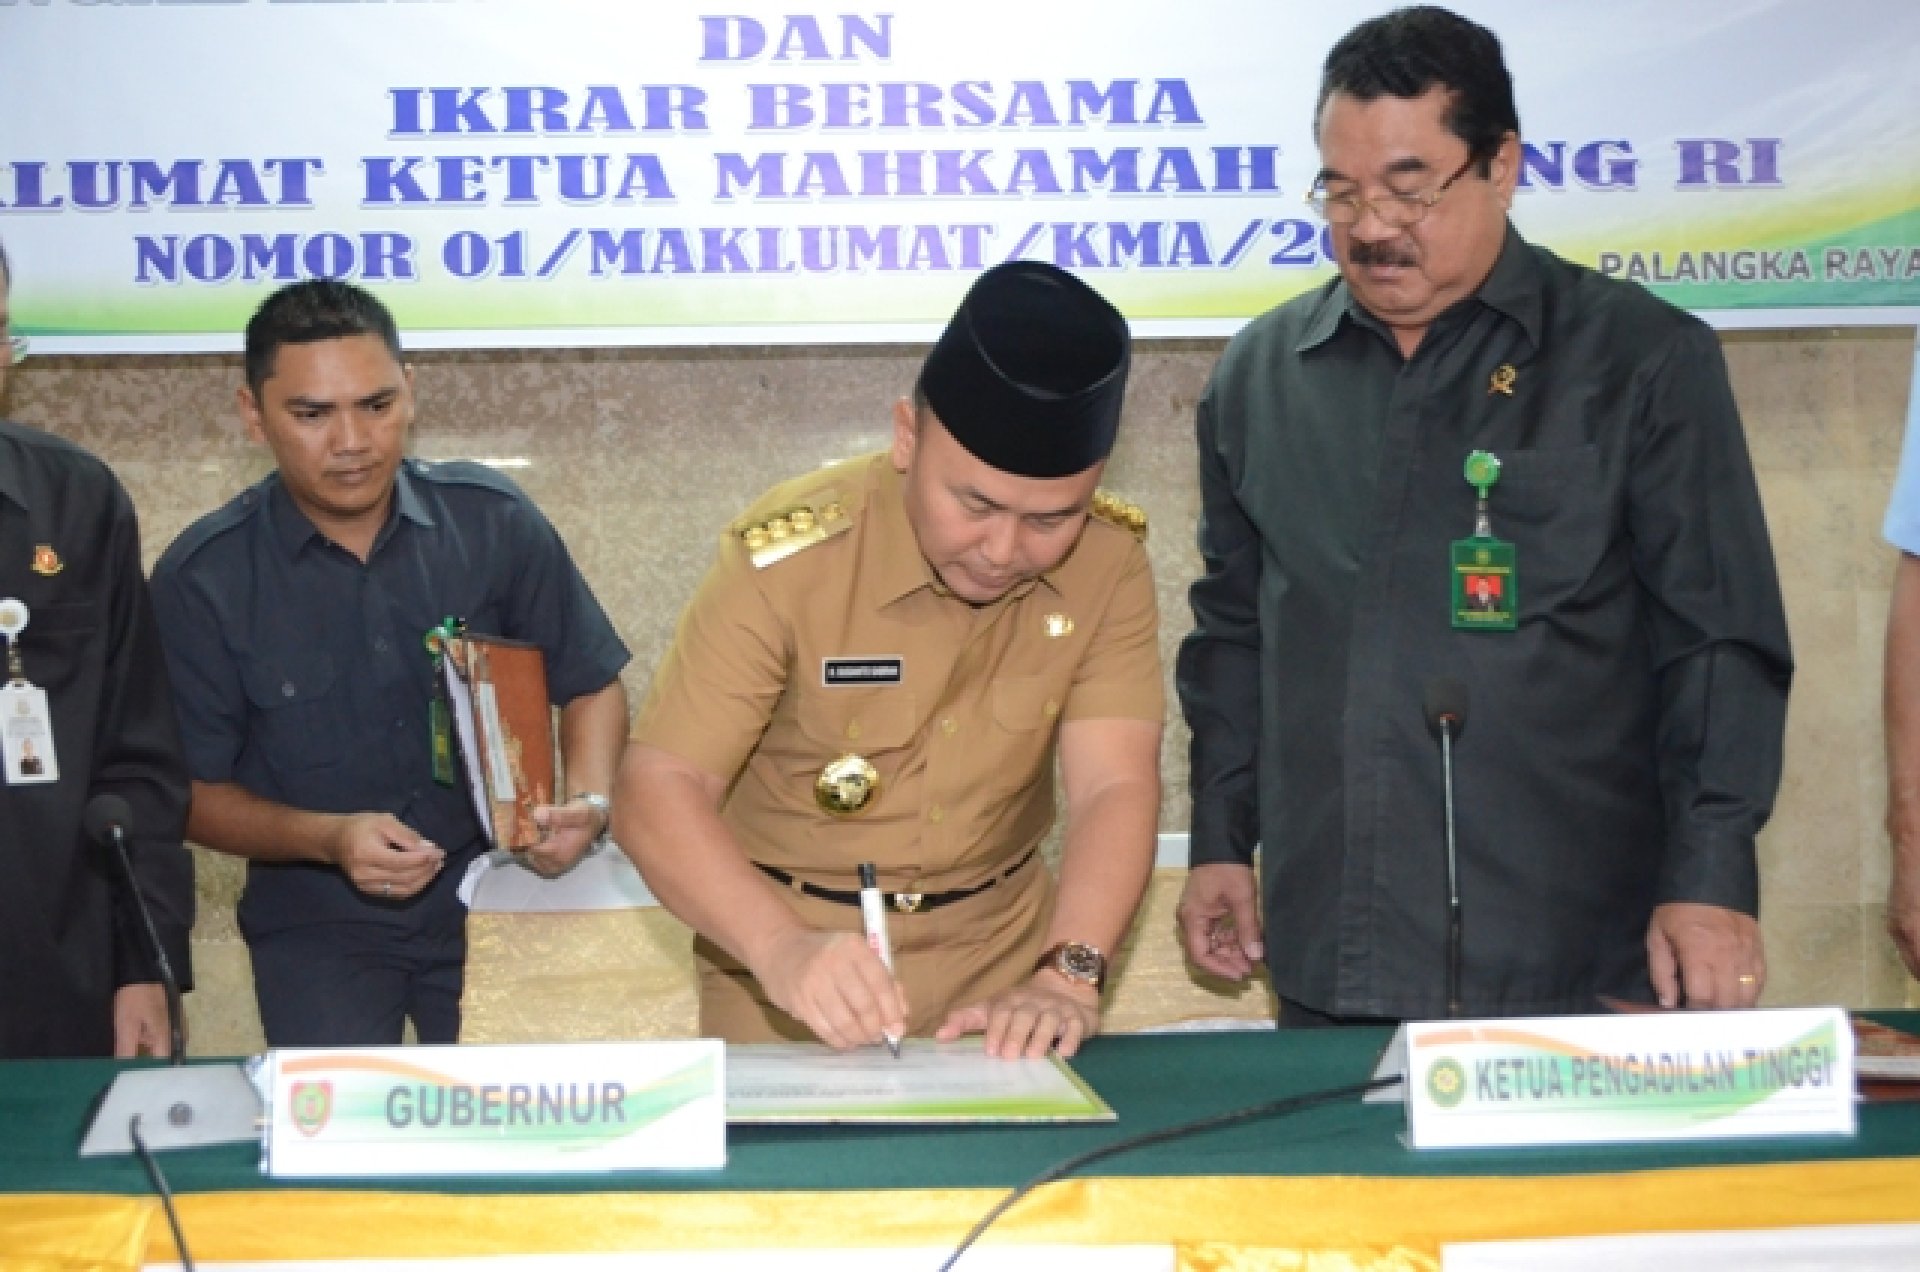 Gubernur Sugianto Sabran Dukung Zona Integritas Di Kalteng